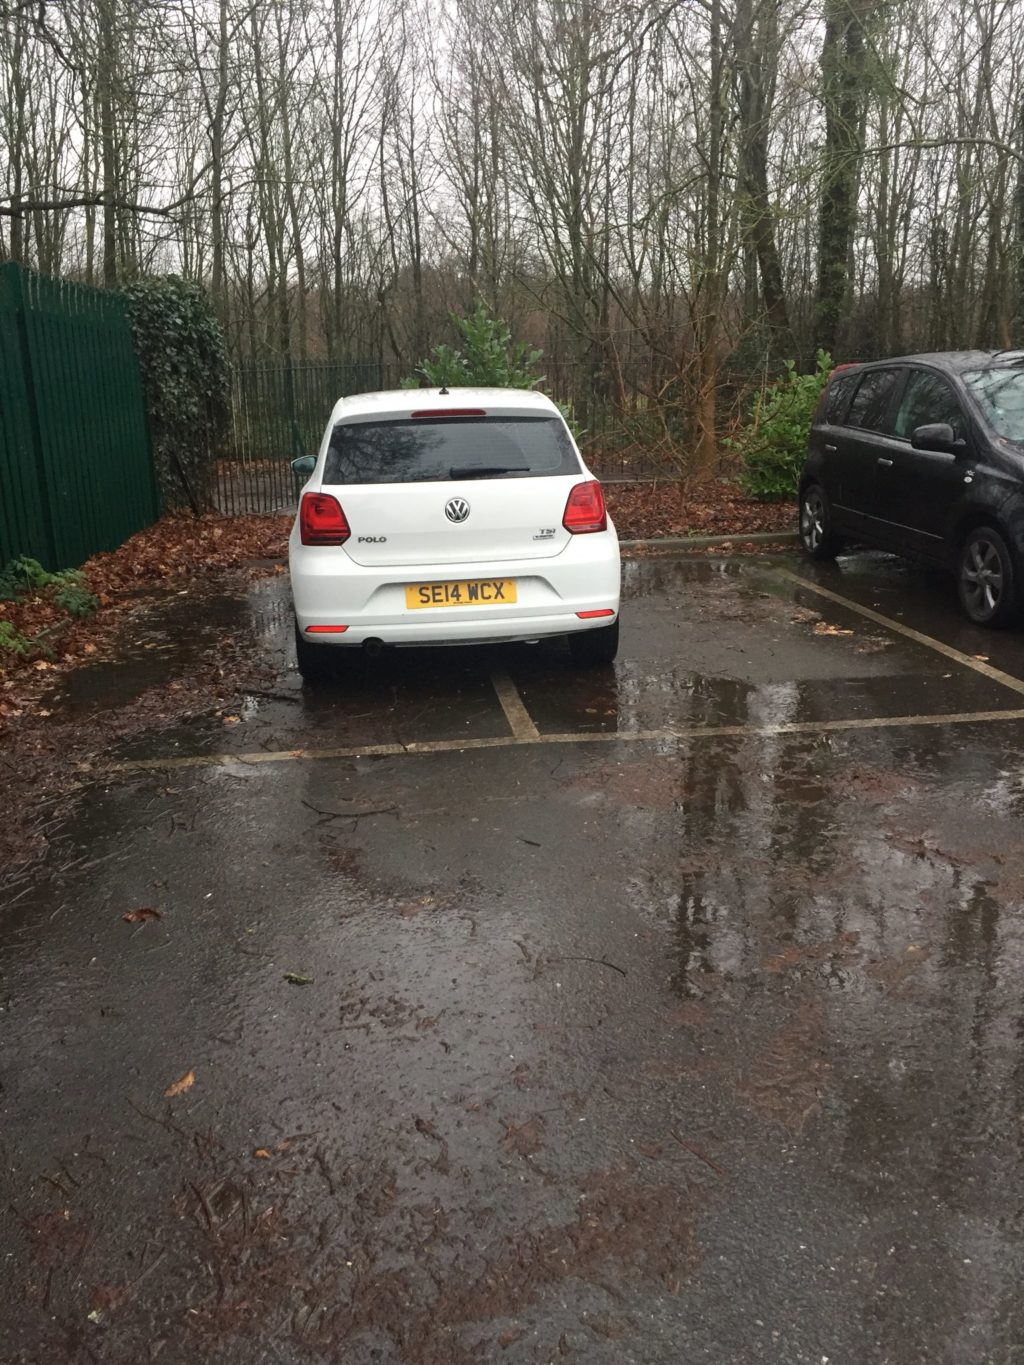 SE14 WCX displaying Selfish Parking